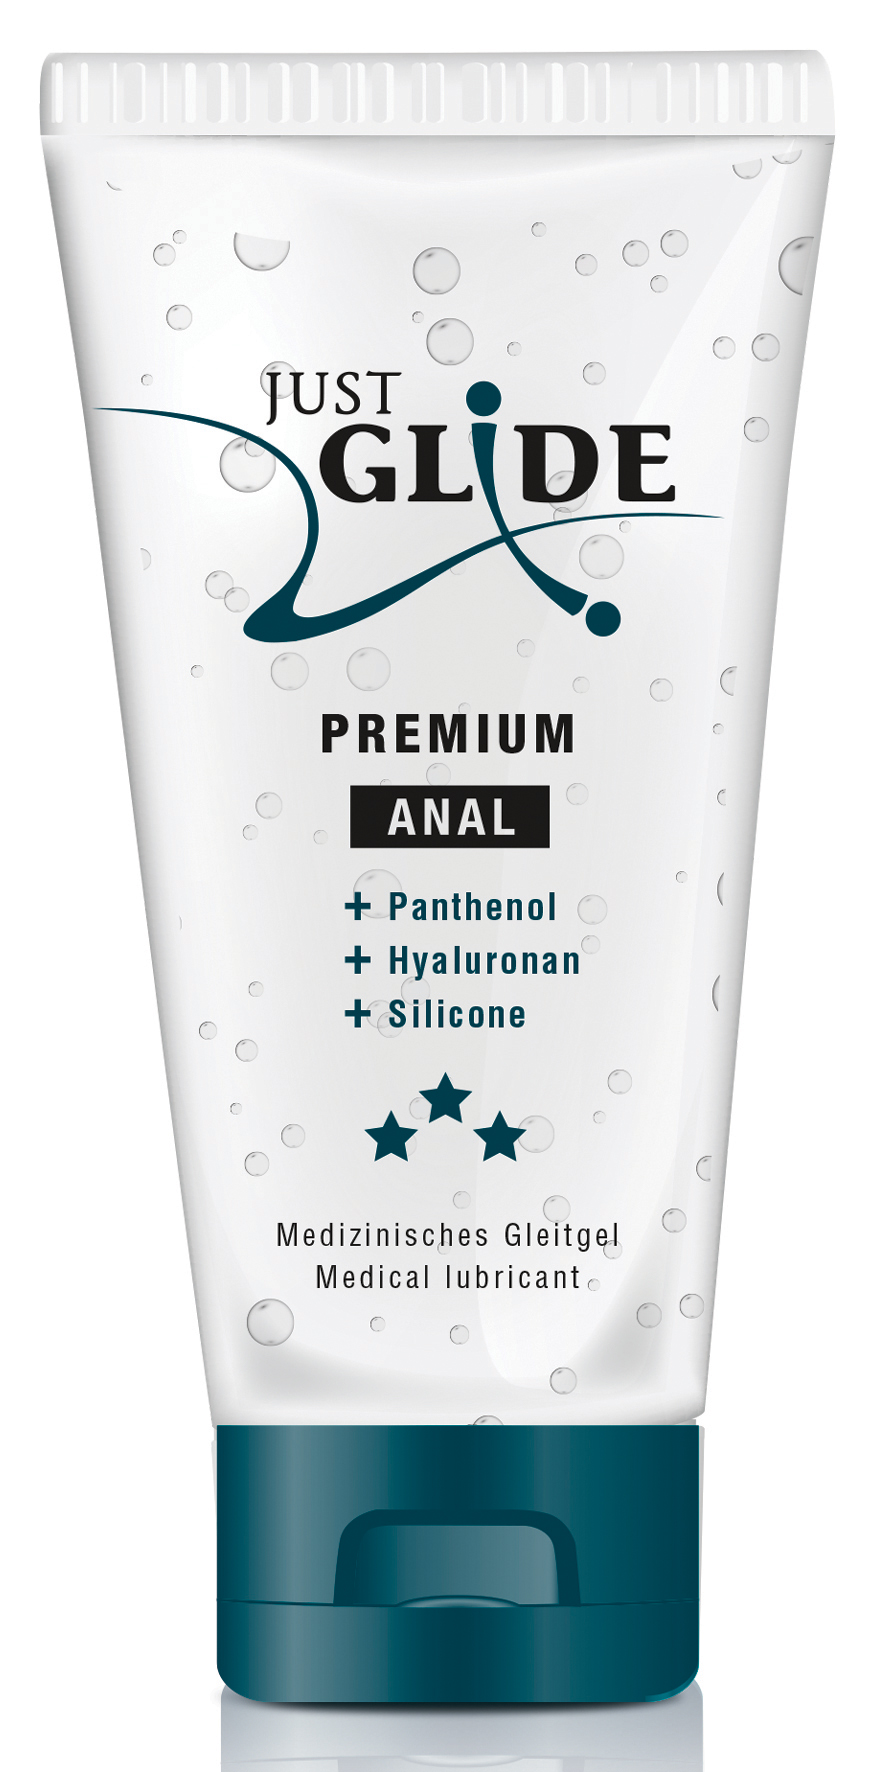 Just Glide Premium Anal 200ml